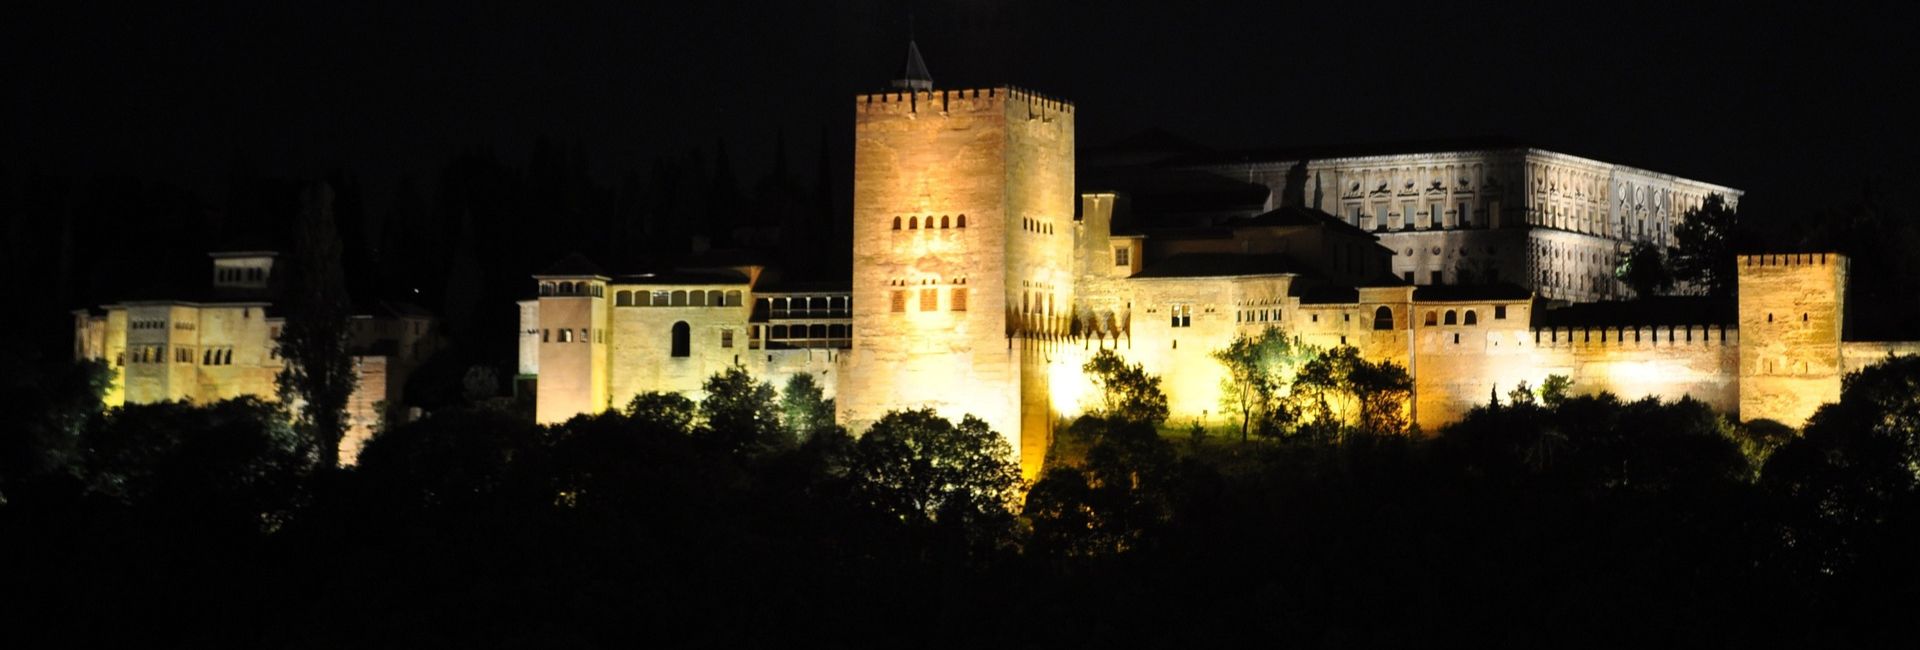 Ambiente nocturno de Granada